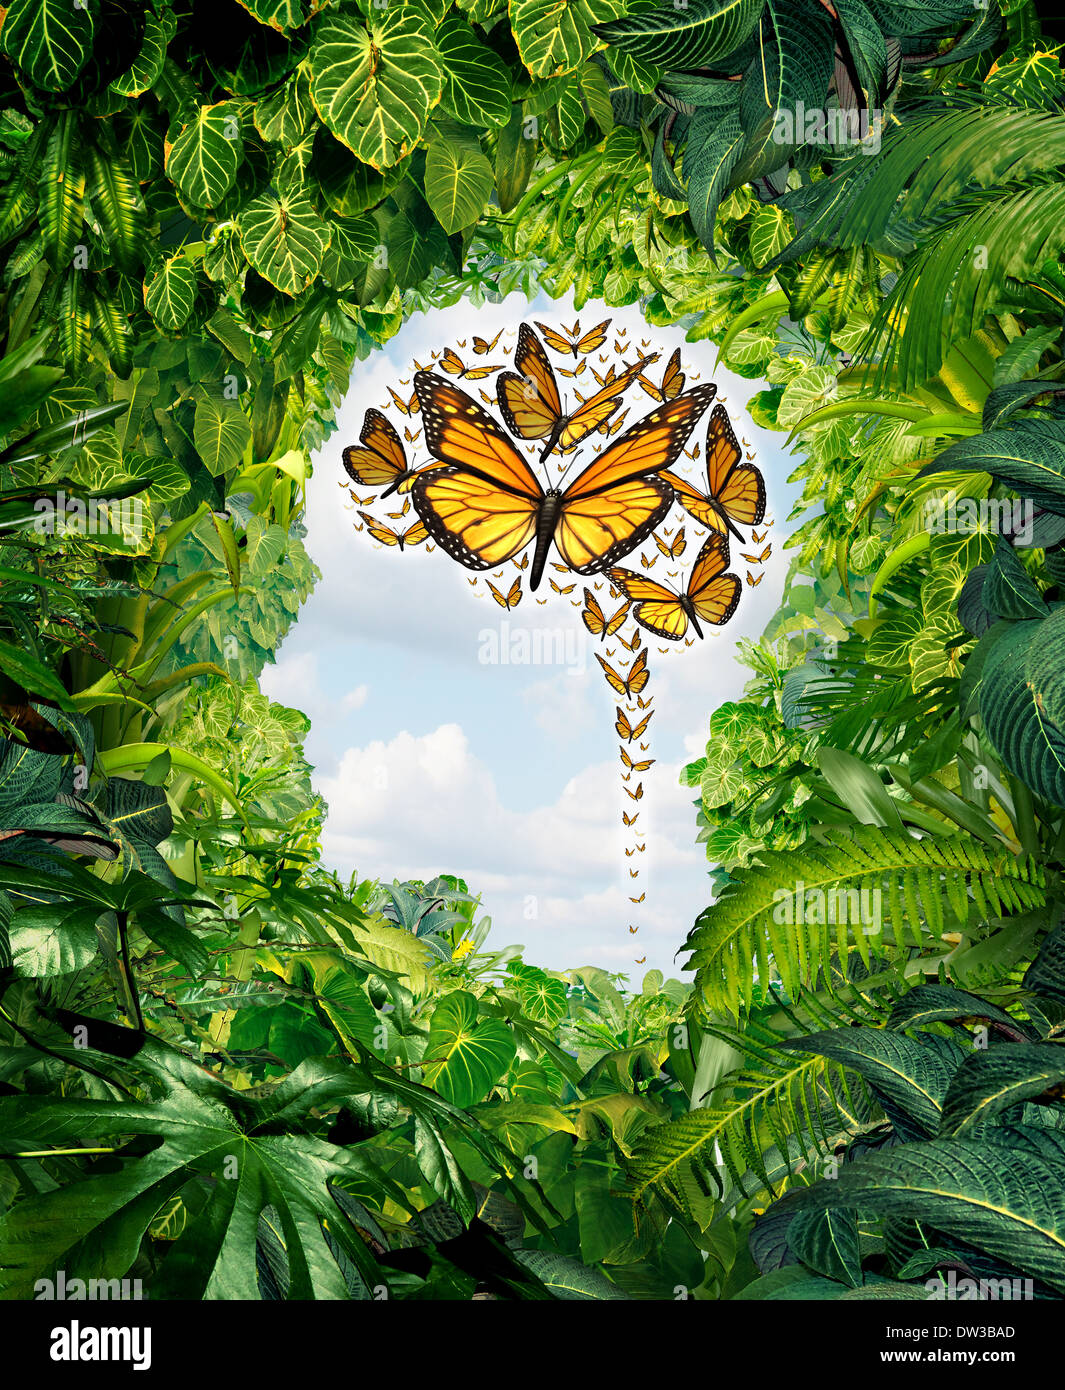 Intelligenz und menschliche Kreativität als Freiheit der Ideen-Symbol auf einem grünen Dschungellandschaft geformt als einen Kopf und eine Gruppe von fliegenden Monarchfalter in Form eines Gehirns als psychische Gesundheit und Bildung Metapher für das Potential des Geistes. Stockfoto